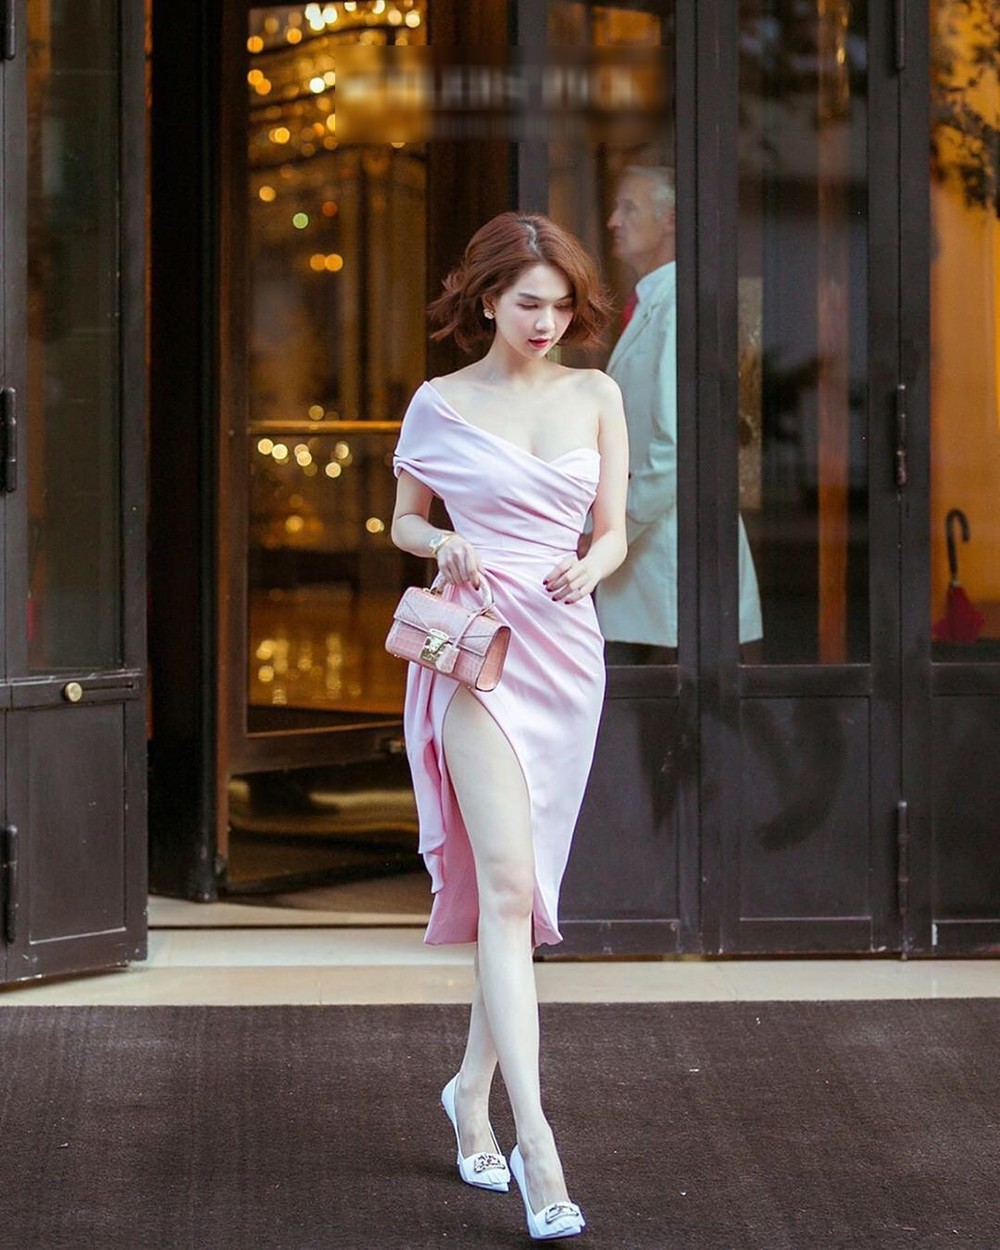  
"Nữ hoàng nội y" diện chiếc váy hồng của Đỗ Long, mix tuyệt đối với chiếc túi đắt đỏ của nhà mốt Mỹ.